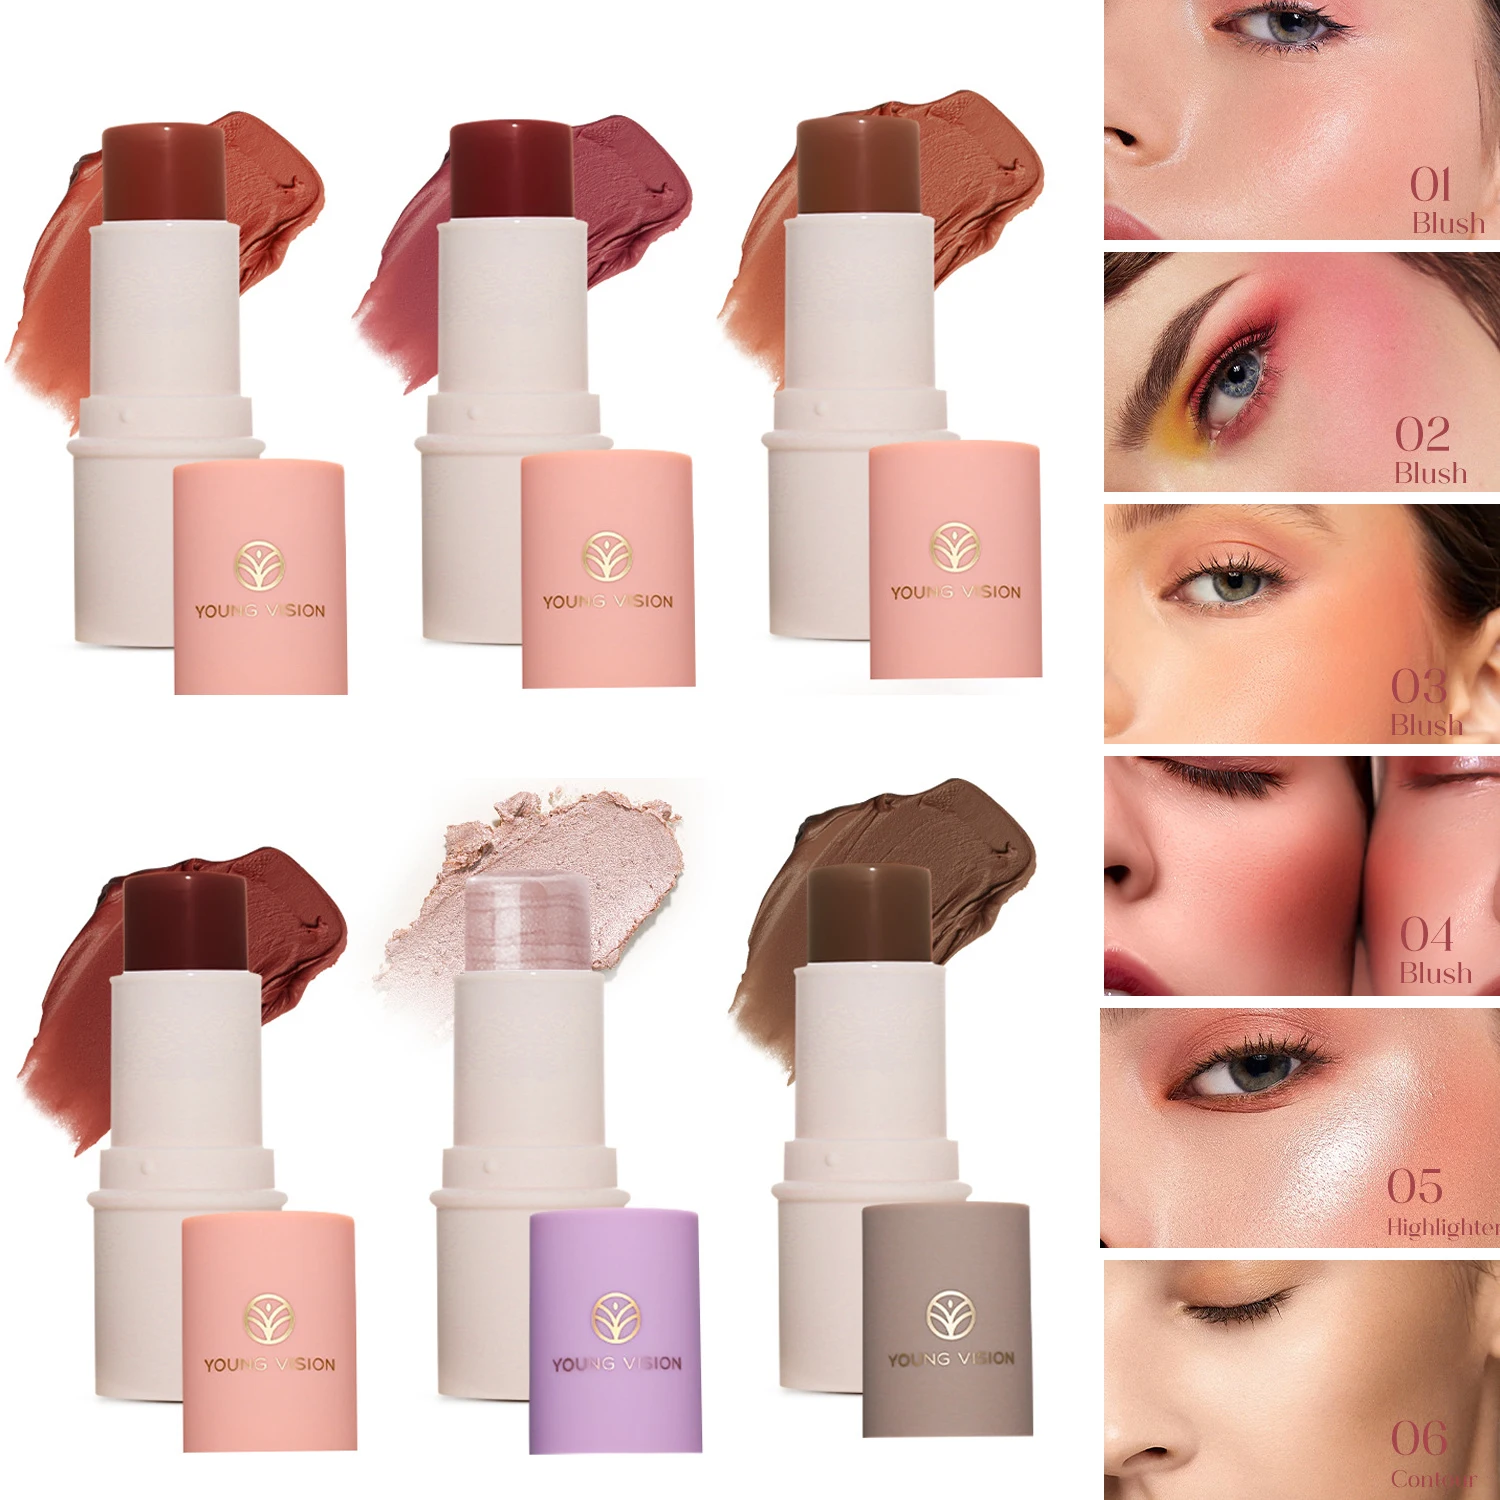 

6 Colors Highlighter Makeup Glitter Contouring Bronzer for Face Blush Sticks Shimmer Powder Texture Illuminator Women Cosmetics